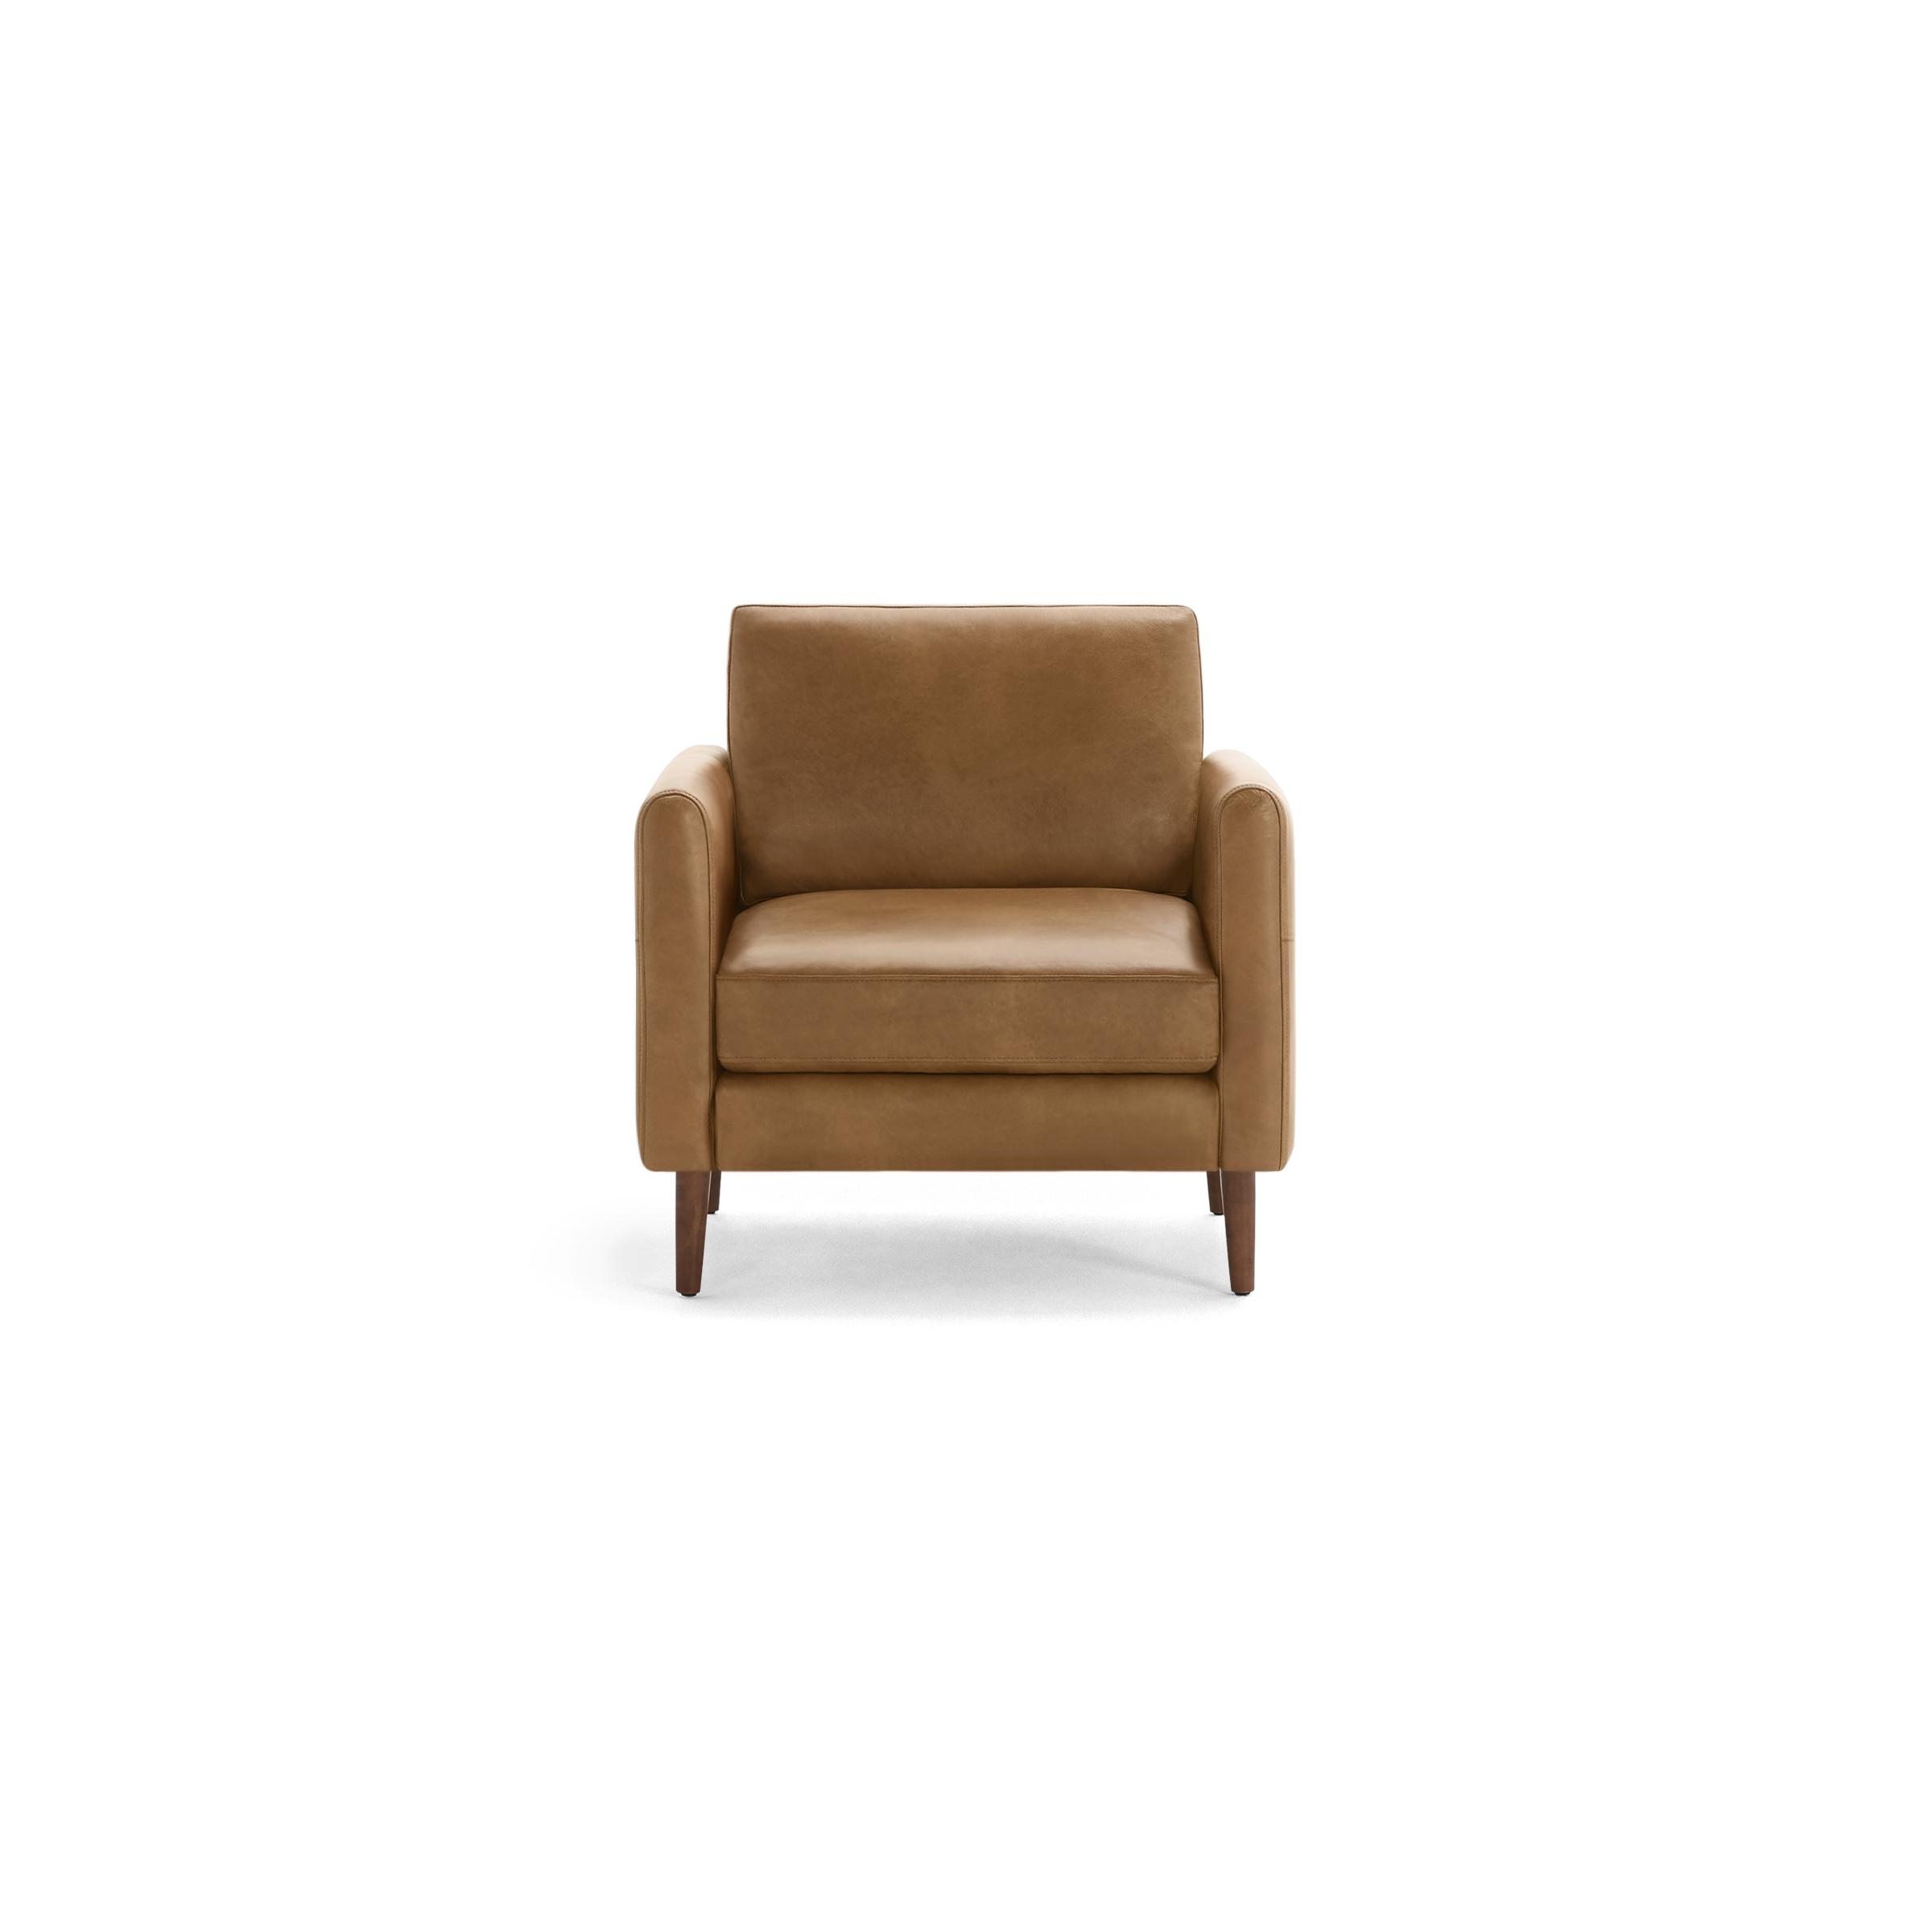 Nomad Leather Club Chair in Camel, Walnut Legs, Leg Finish: WalnutLegs - Image 0